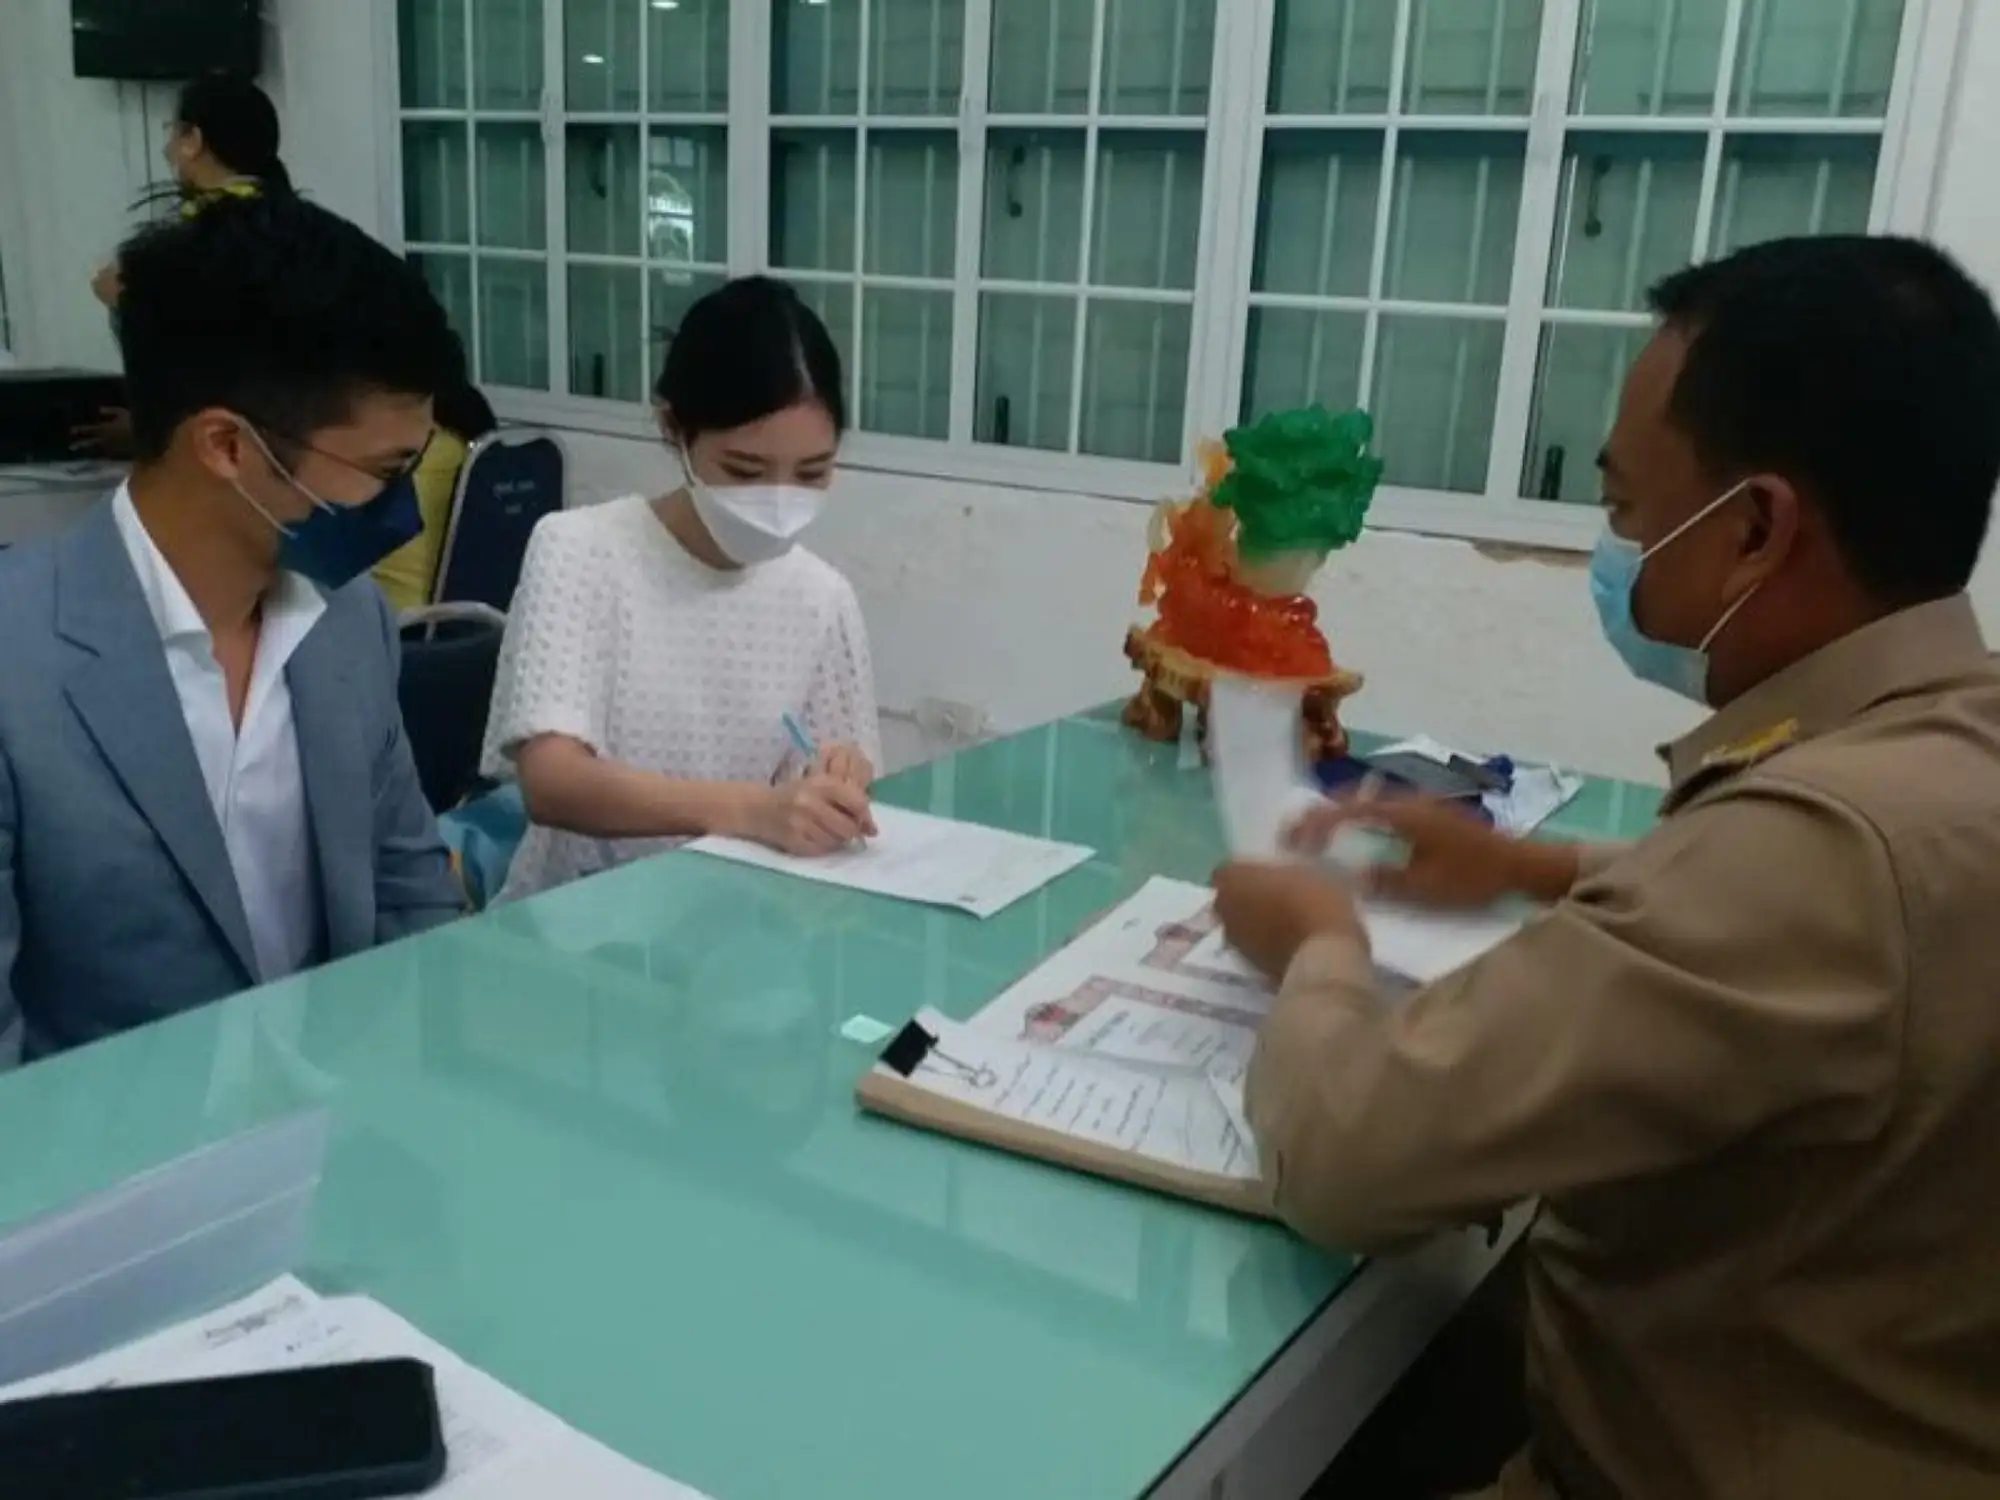 利用普吉岛沙盒计划入境的香港籍男子Francis Wong和他的泰籍女友Nattanan Chatadaensuwan，两人相约要在普吉相见，并办理结婚登记（图片来源：thephuketnews）